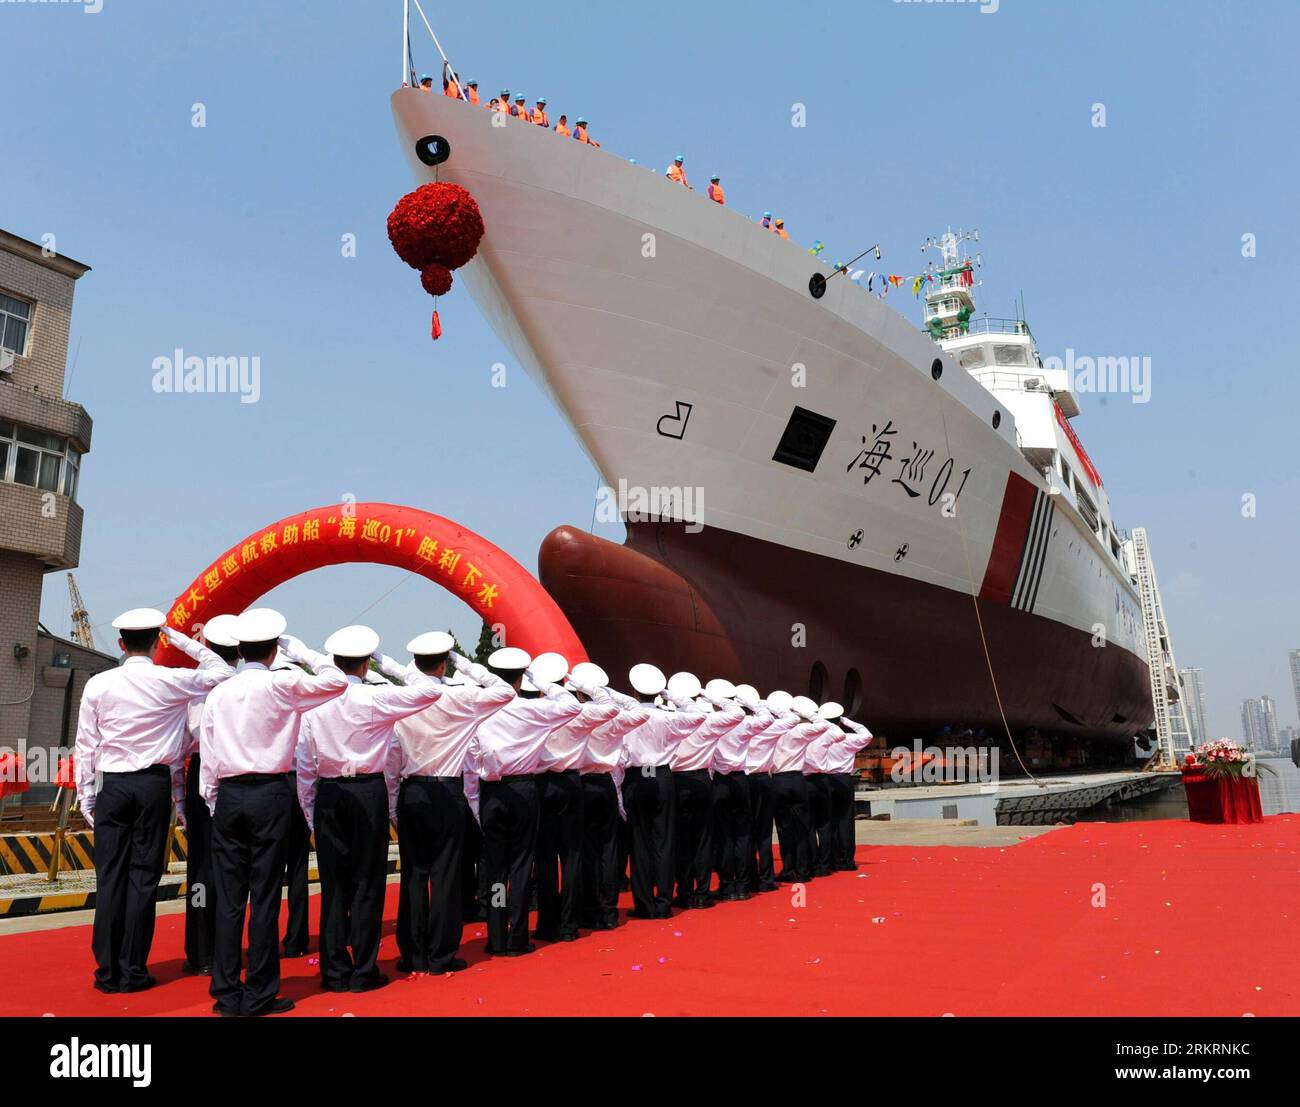 Bildnummer: 58286444 Datum: 28.07.2012 Copyright: imago/Xinhua (120728) -- WUHAN, 28. Juli 2012 (Xinhua) -- Foto aufgenommen am 28. Juli 2012 zeigt die Lachzeremonie des Patrouillenschiffs Haixun 01 in Wuhan, der Hauptstadt der zentralchinesischen Provinz Hubei. Das Patrouillenschiff ist für eine Länge von 128,6 Metern mit einer Tonnage von 5.418 Tonnen ausgelegt. Das Schiff wird Platz für 200 gerettete Seefahrer haben und mit Geräten ausgestattet sein, die eine grundlegende Behandlung und Operation für alle Verletzten ermöglichen. Neben Rettungseinsätzen kann das Schiff Schiffe schleppen und Brände auf anderen Booten auslöschen. (Xinhua/Wan h Stockfoto